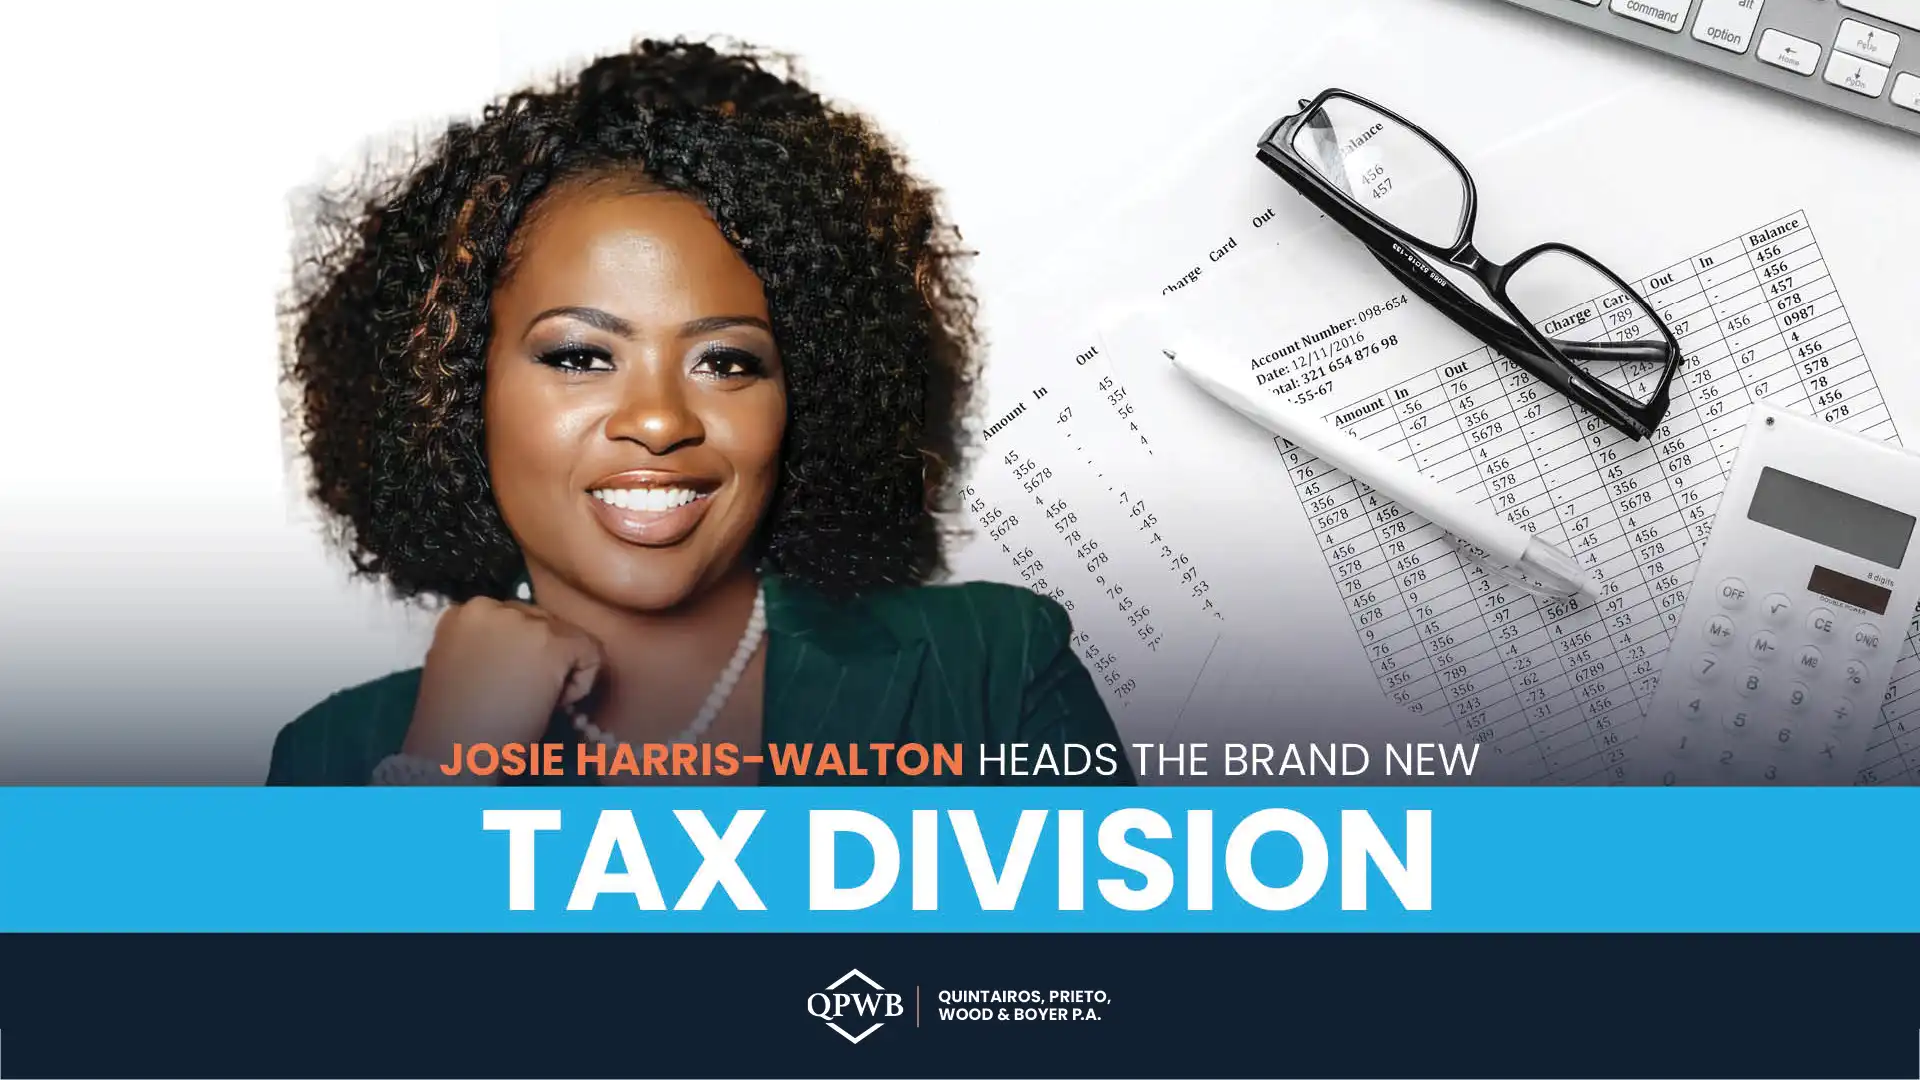 ‘Tis the Season: QPWB’s New Tax Division and Josie Harris-Walton Take Center Stage